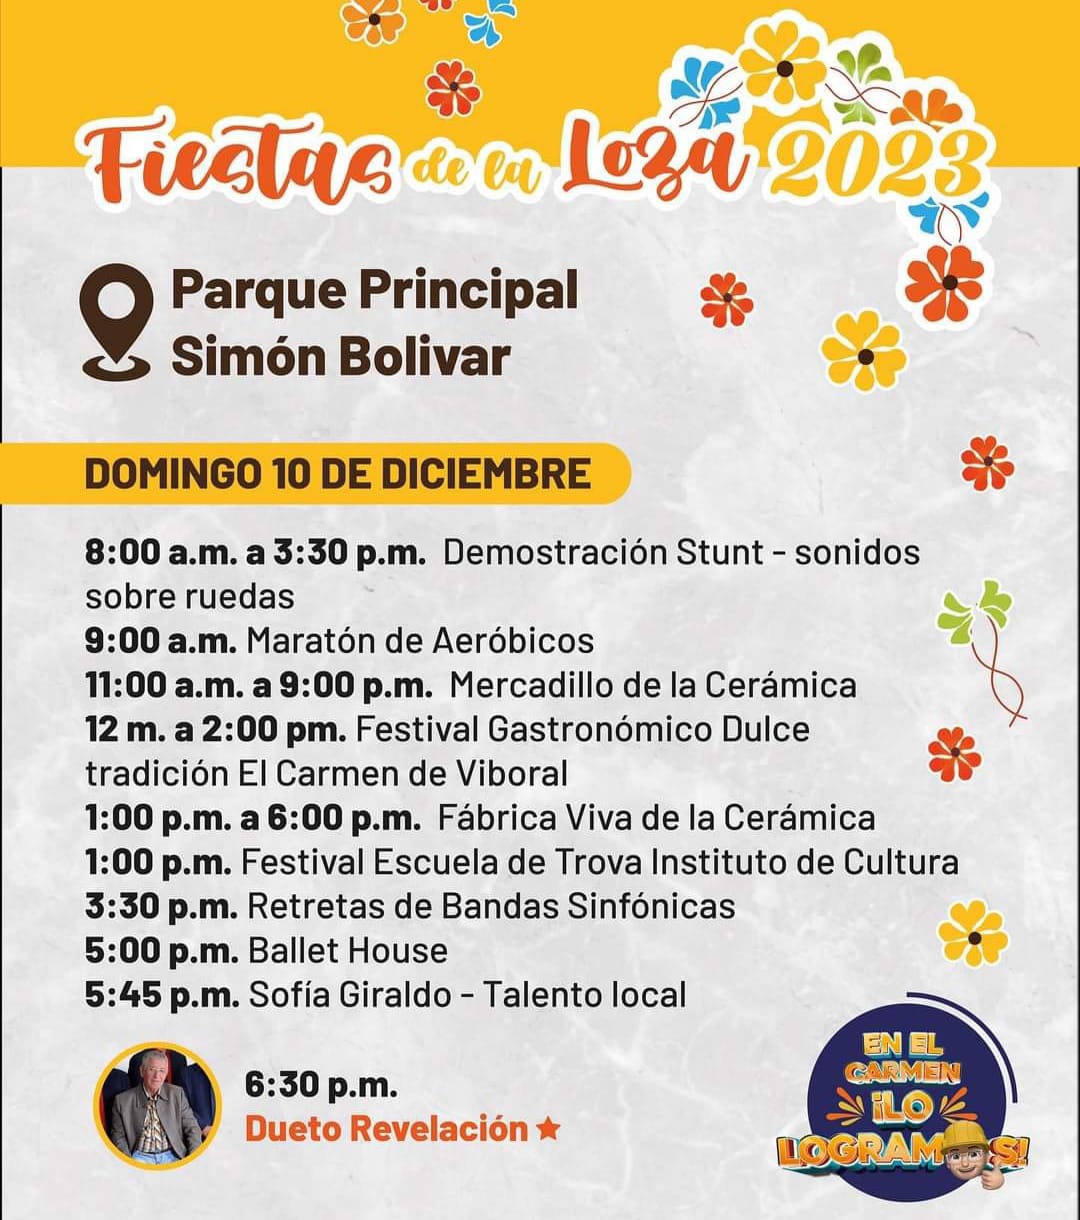 Fiestas de la Loza 2023 - D10 - - El Carmen de Viboral - Antioquia